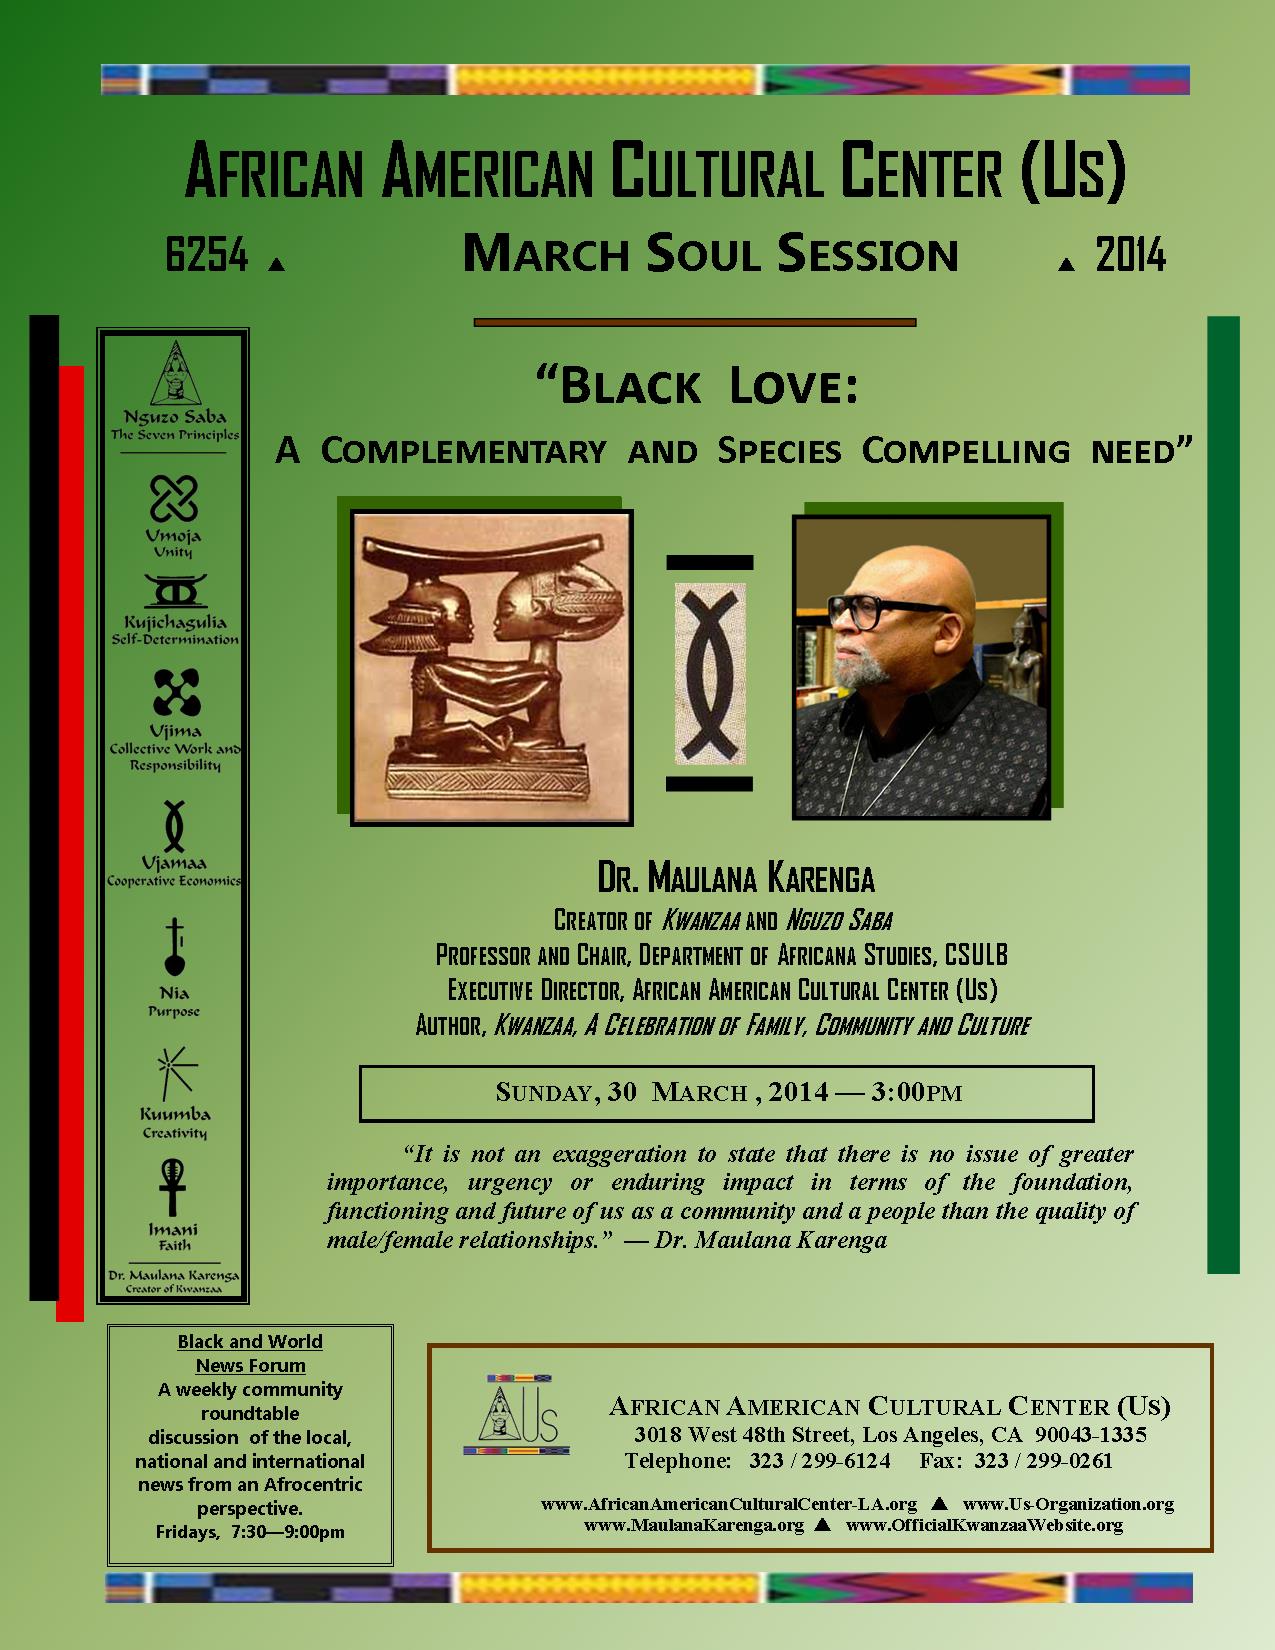 03-30-14 Dr. Maulana Karenga--Black Love